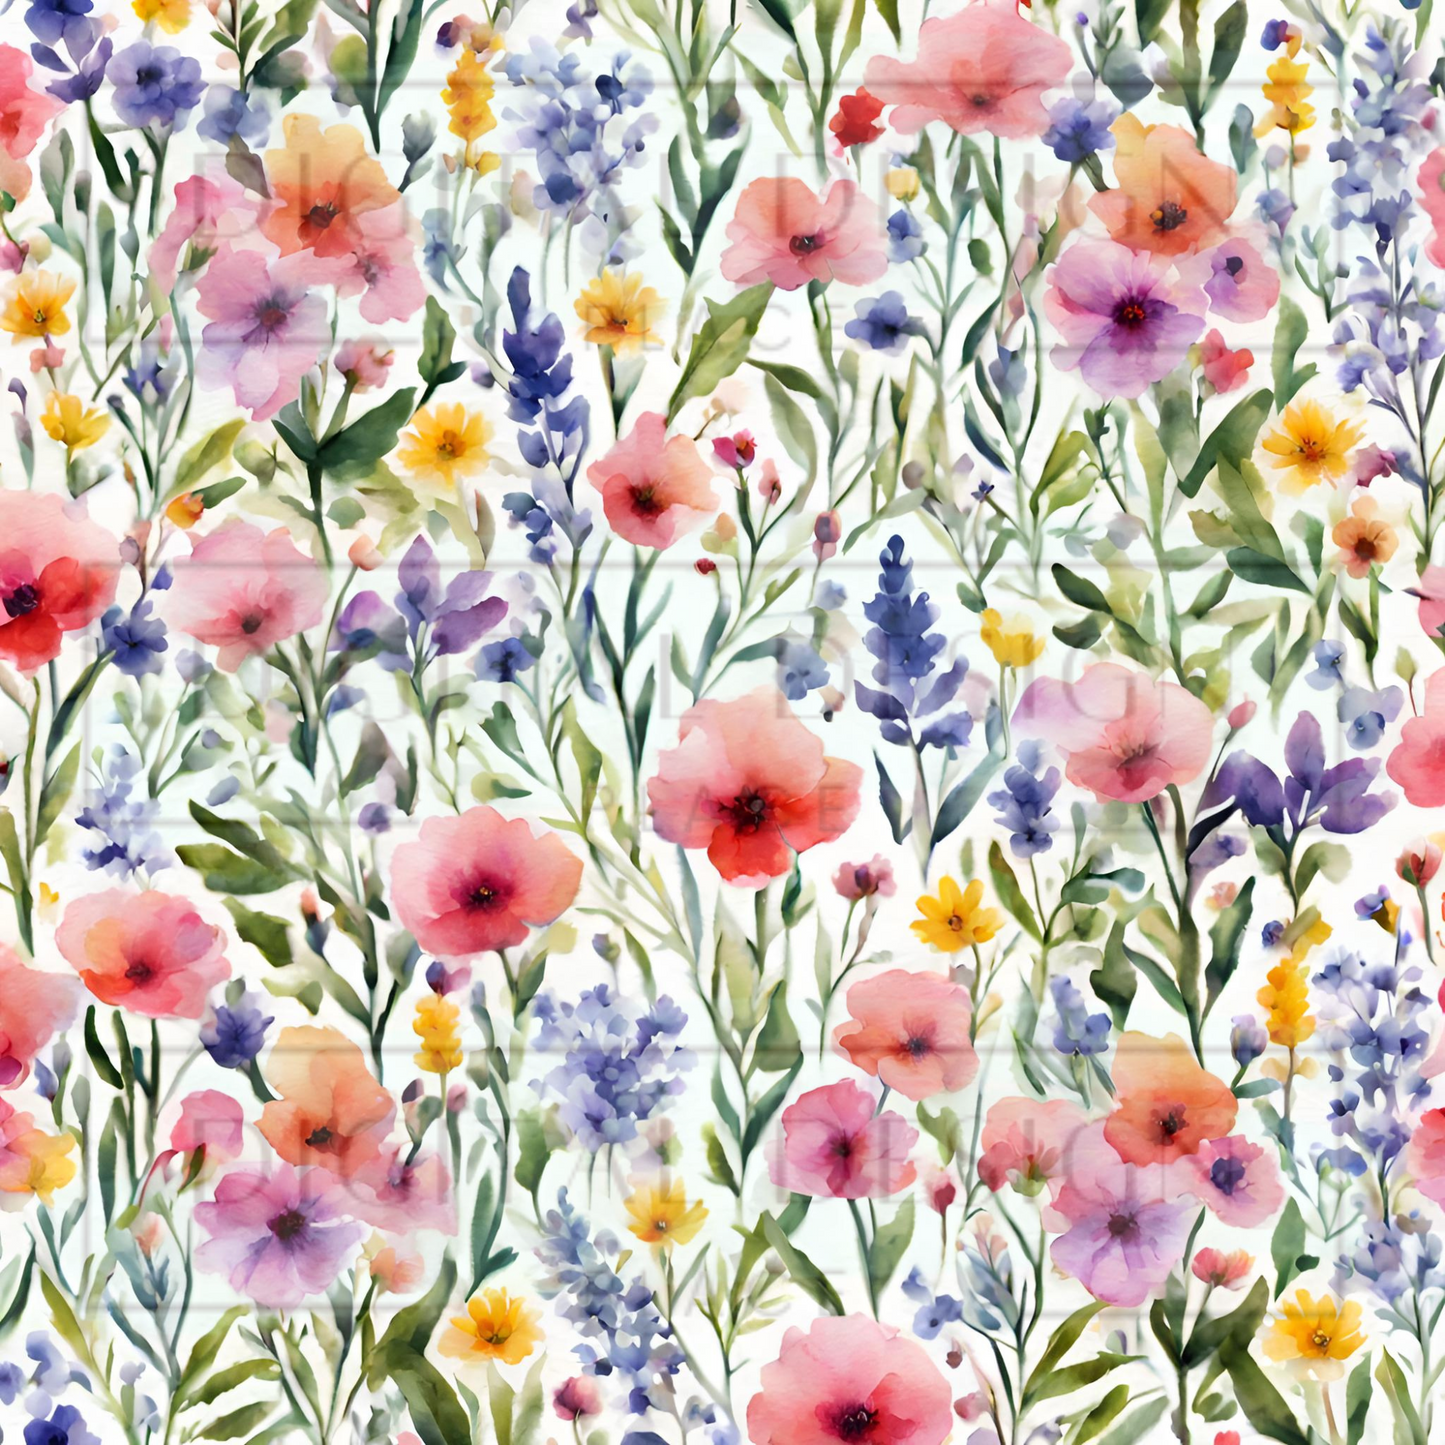 Watercolor Wildflowers VinylV1142